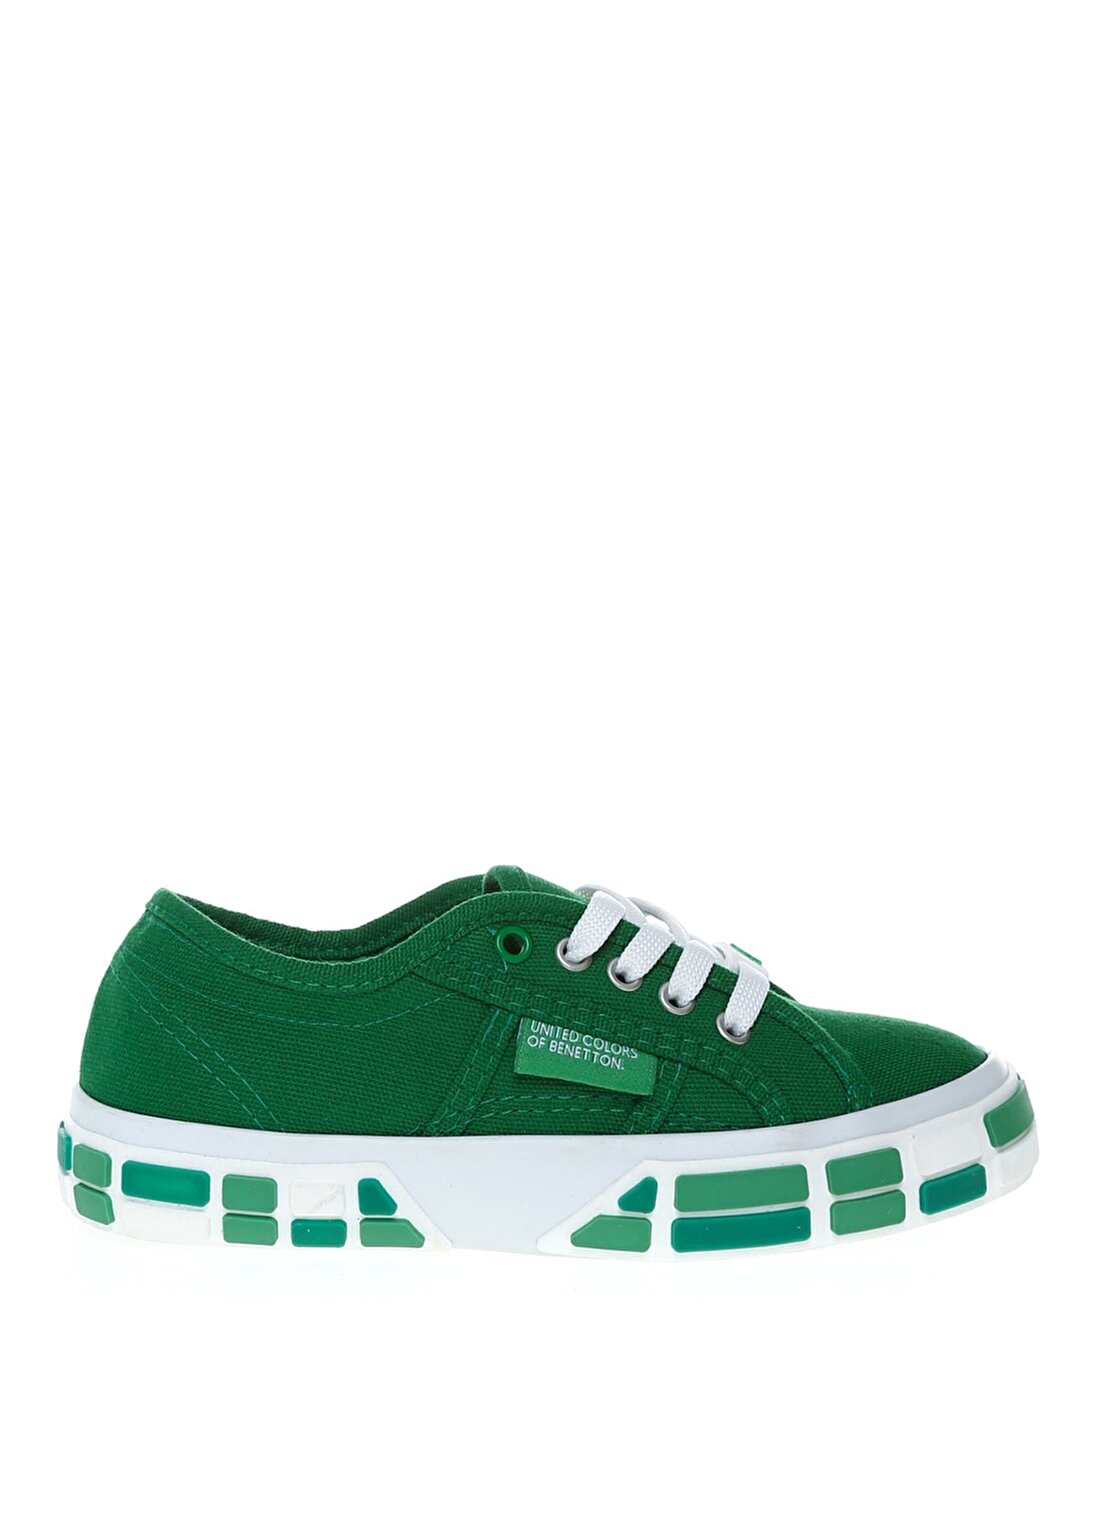 Benetton Yeşil Erkek Çocuk Yürüyüş Ayakkabısı BN-30693 91-Yesil